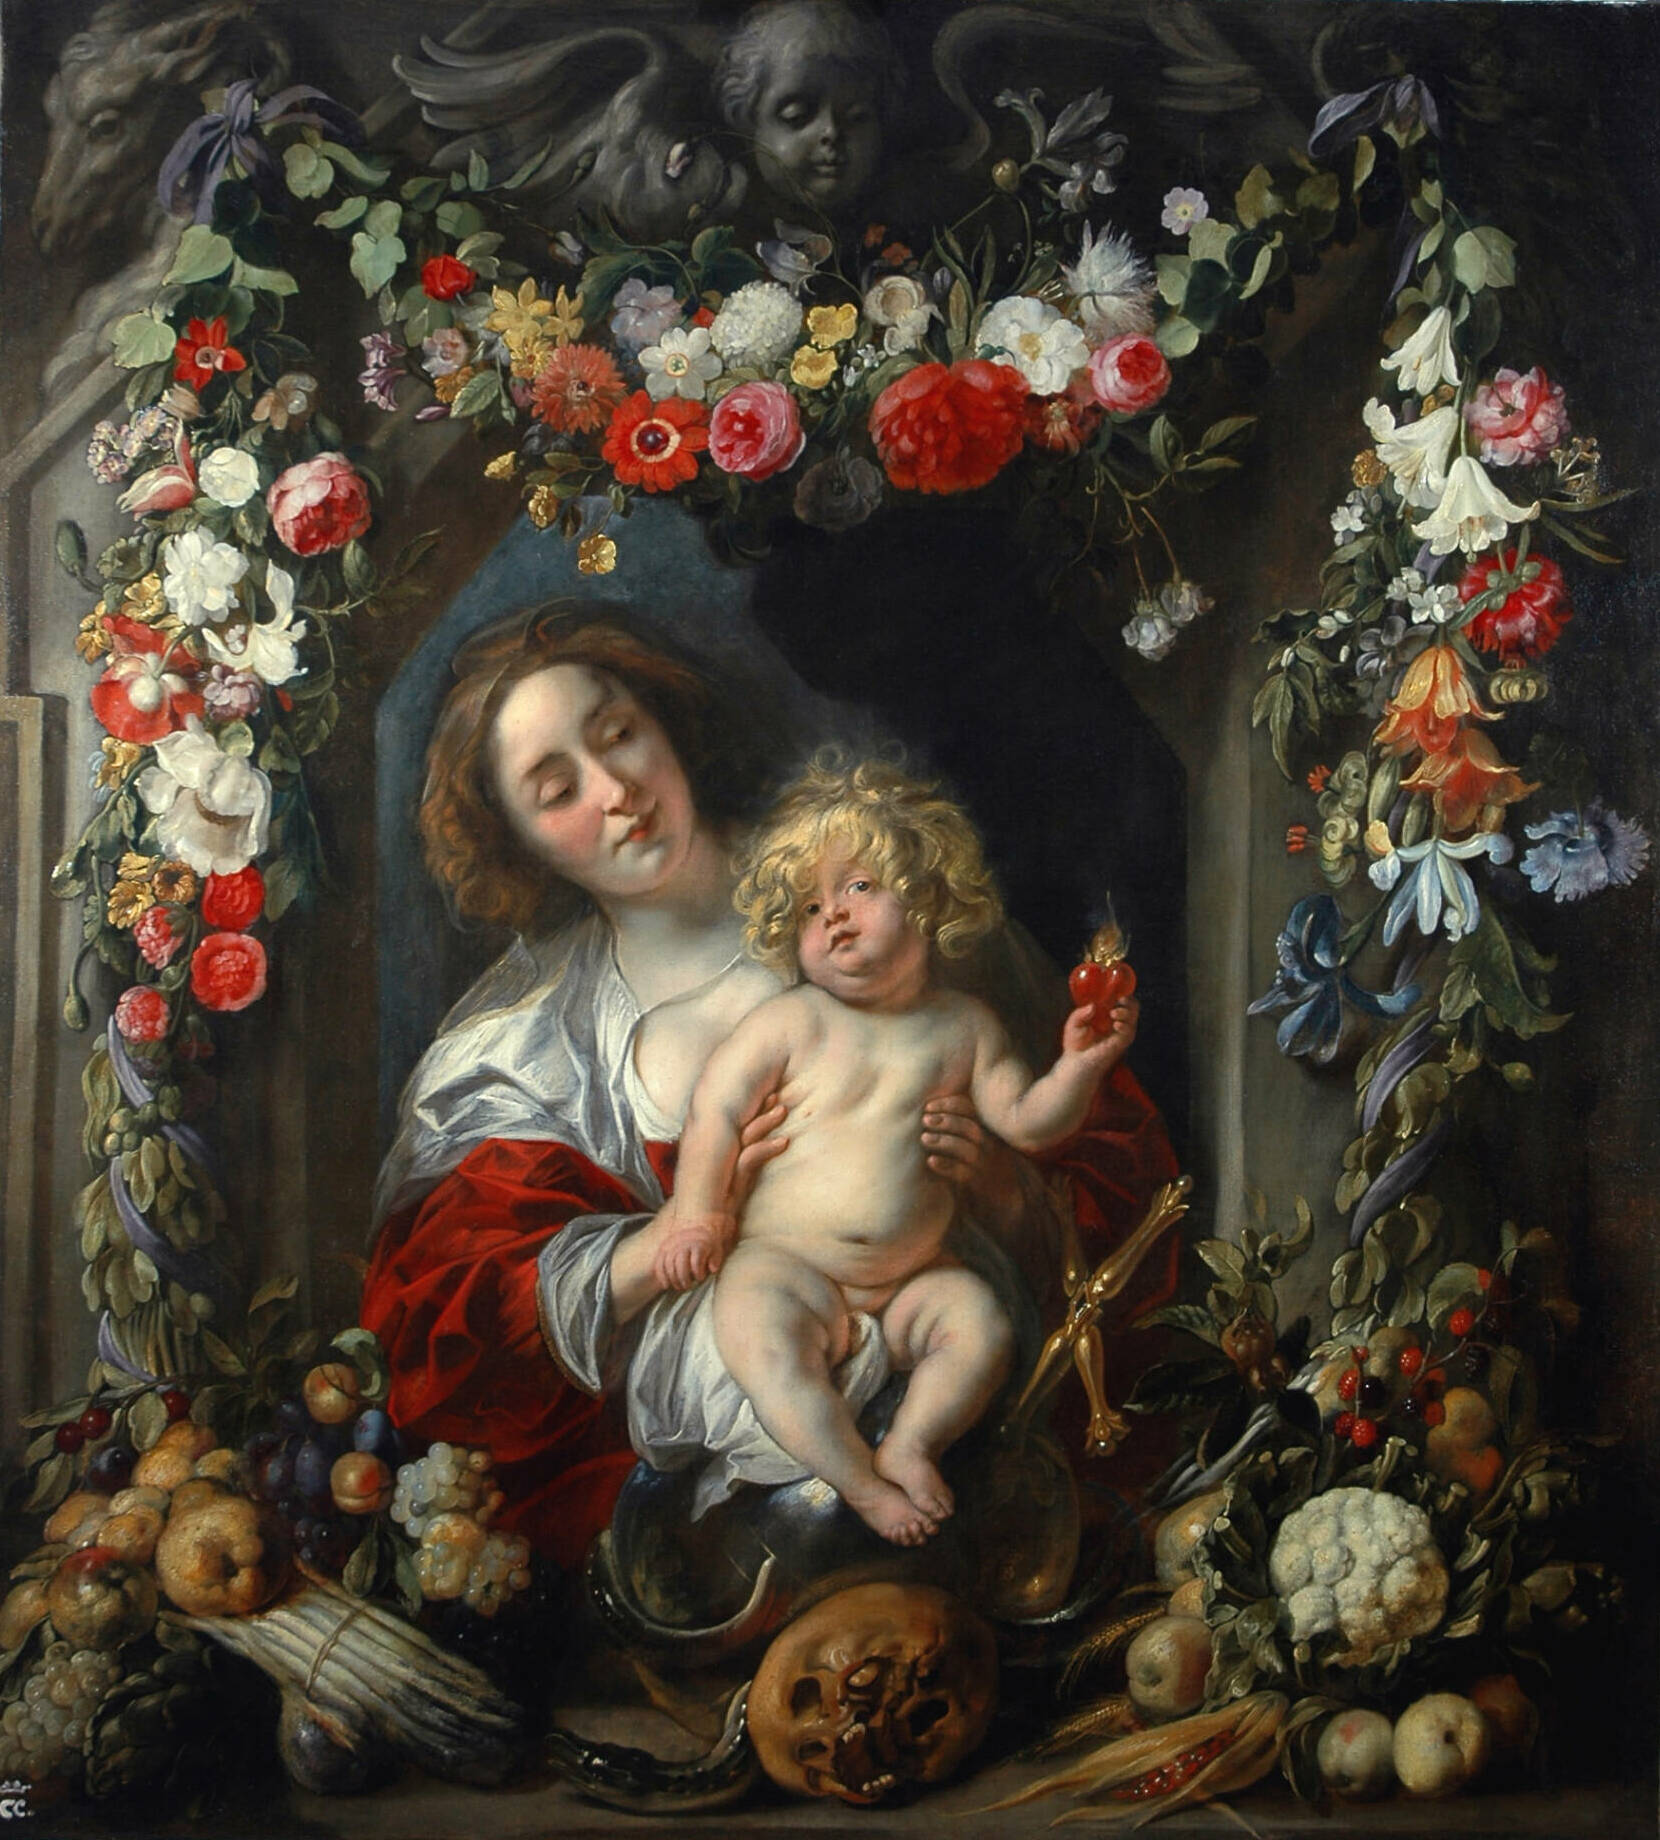 Virgin Mary with baby Jesus in Fruit and Vegetable Garland | Jacob Jordaens en Van Utrecht